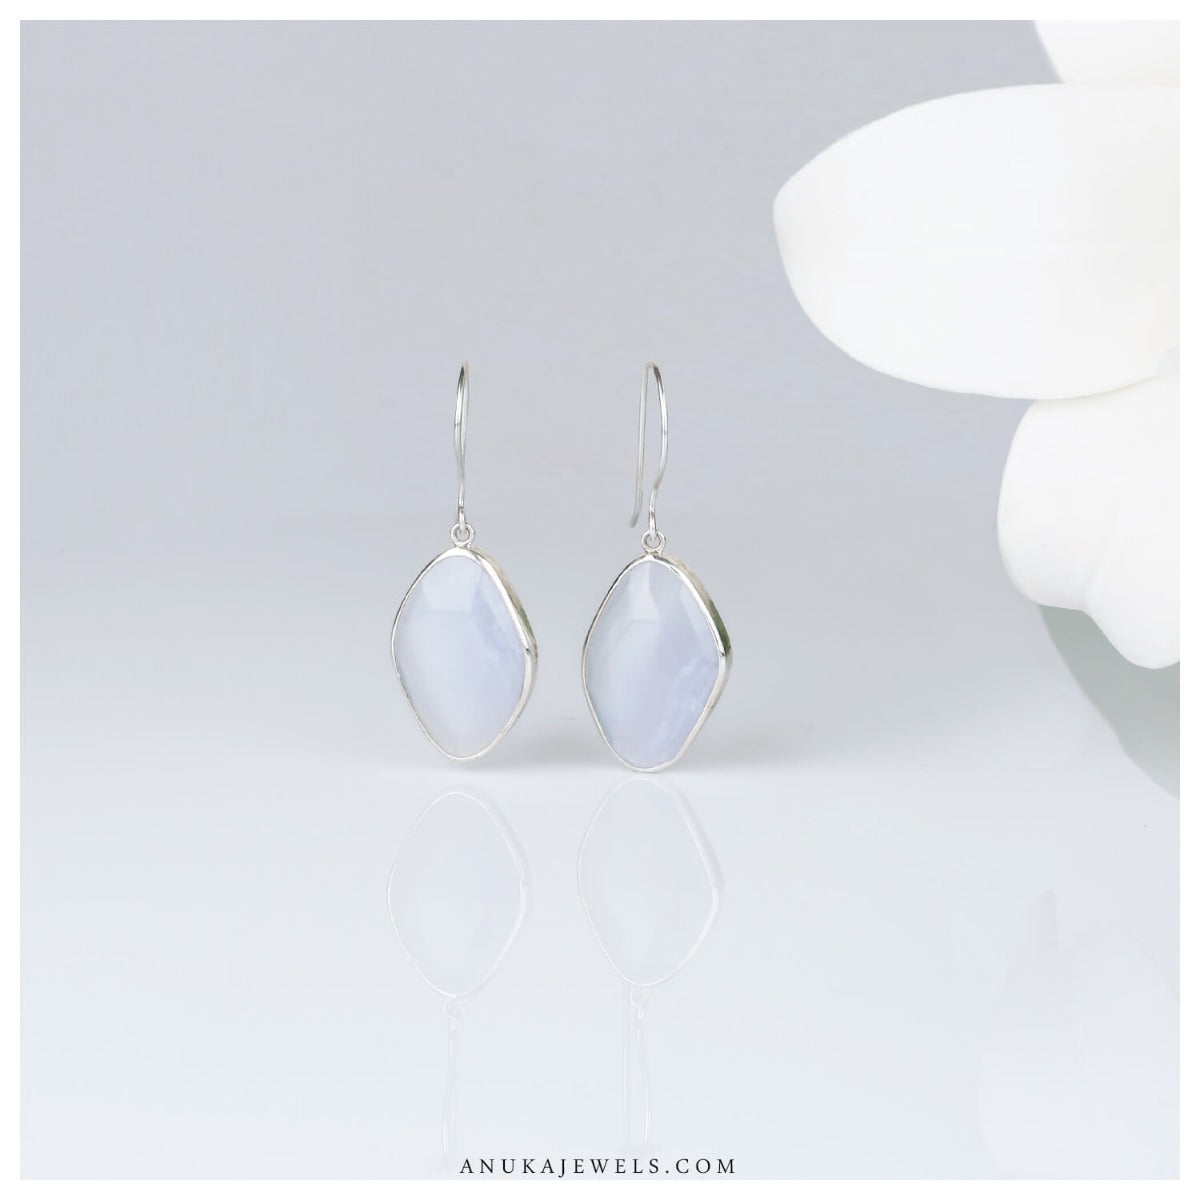  silver chalcedony earrings